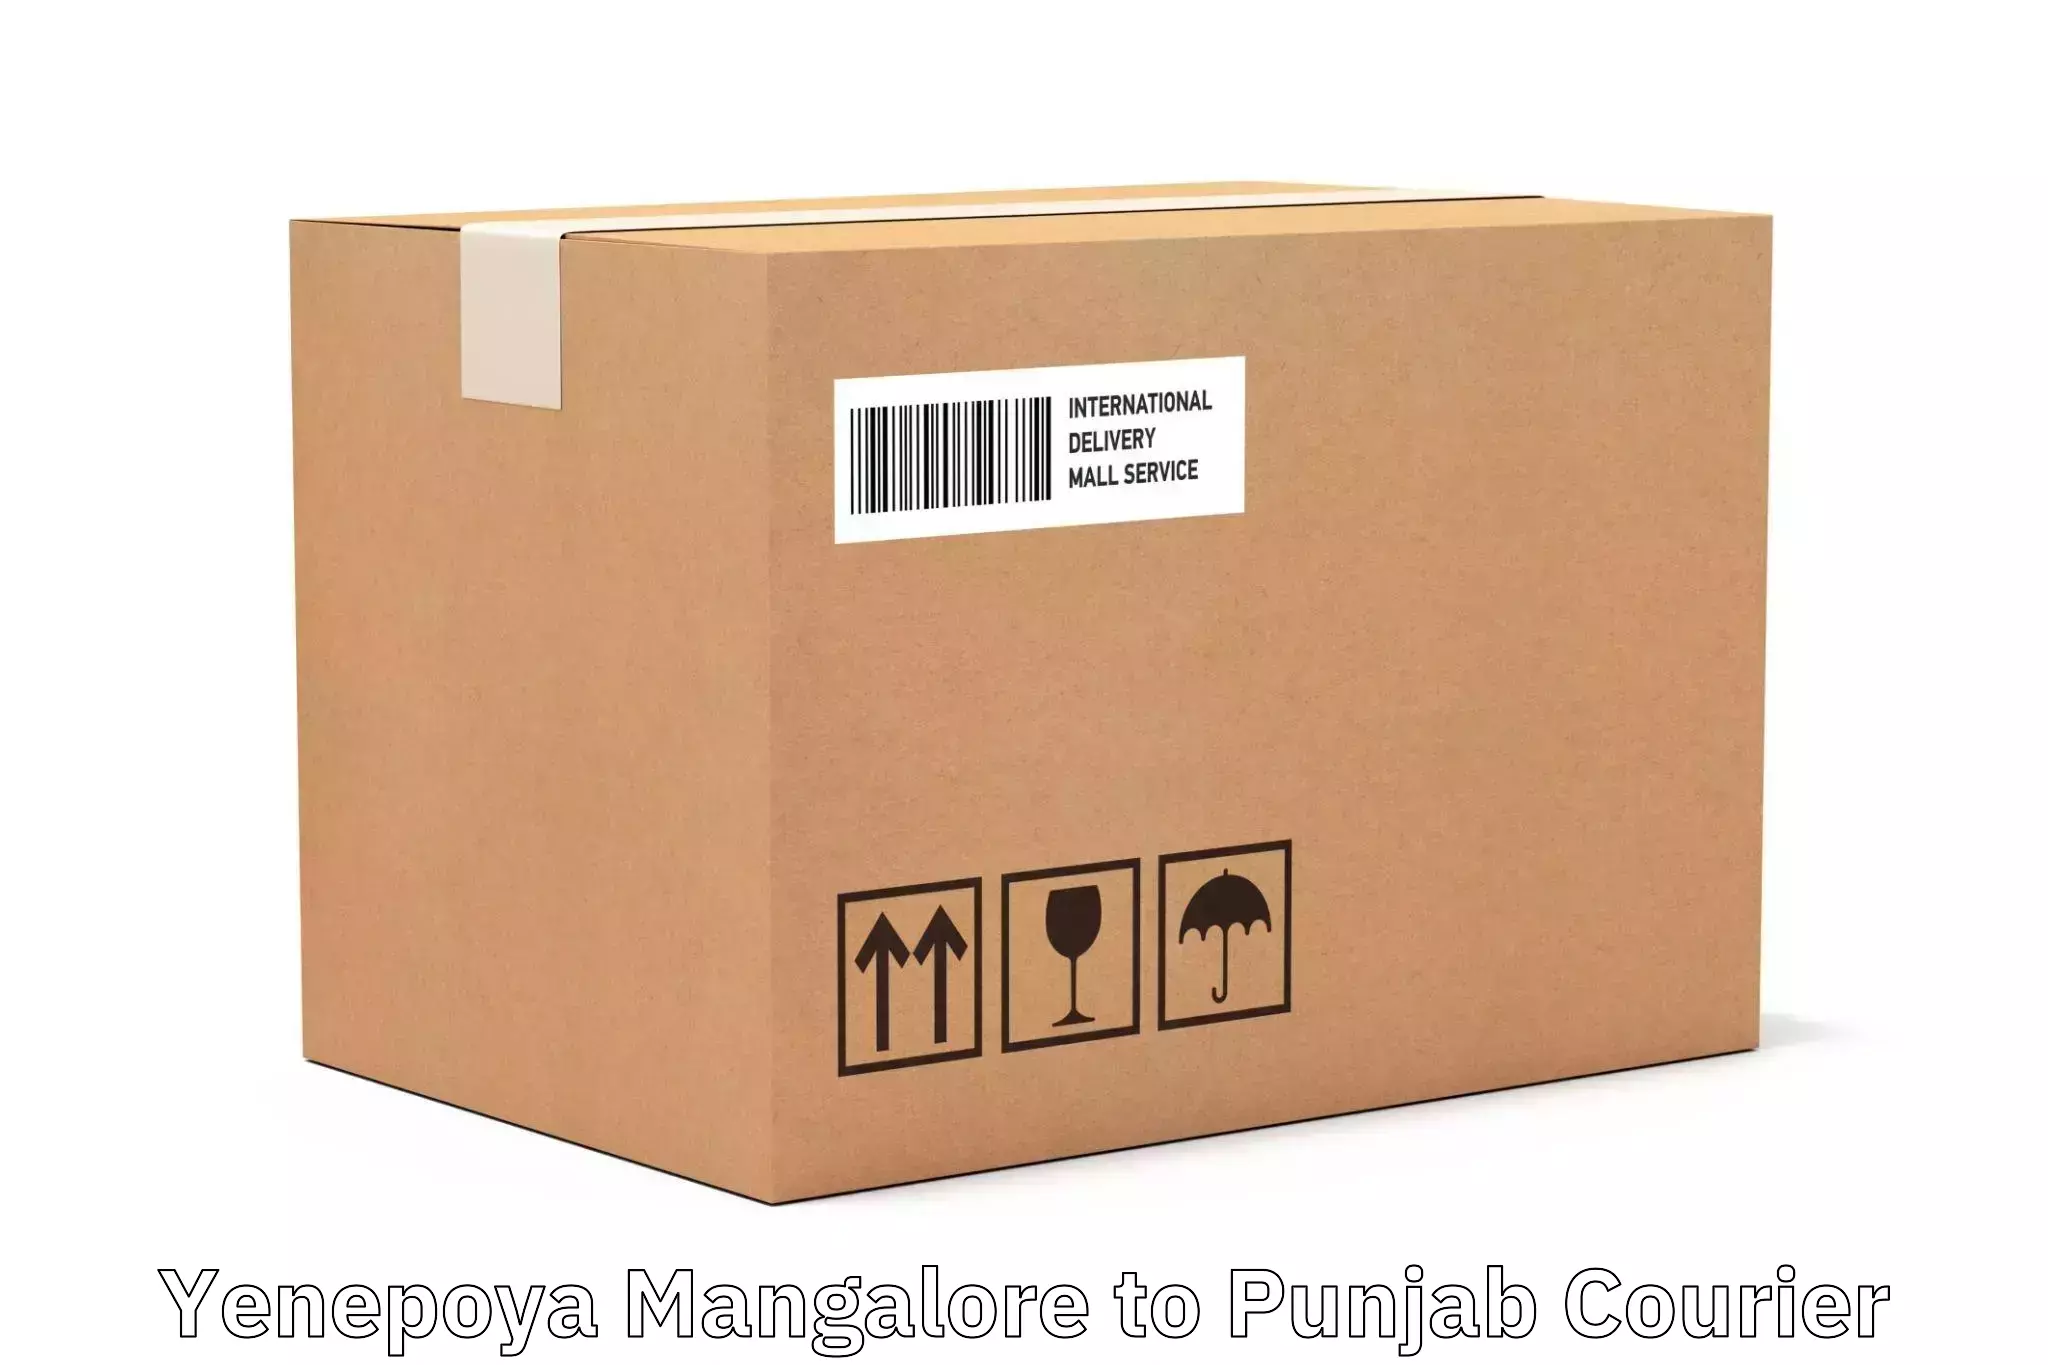 Affordable international shipping in Yenepoya Mangalore to Central University of Punjab Bathinda